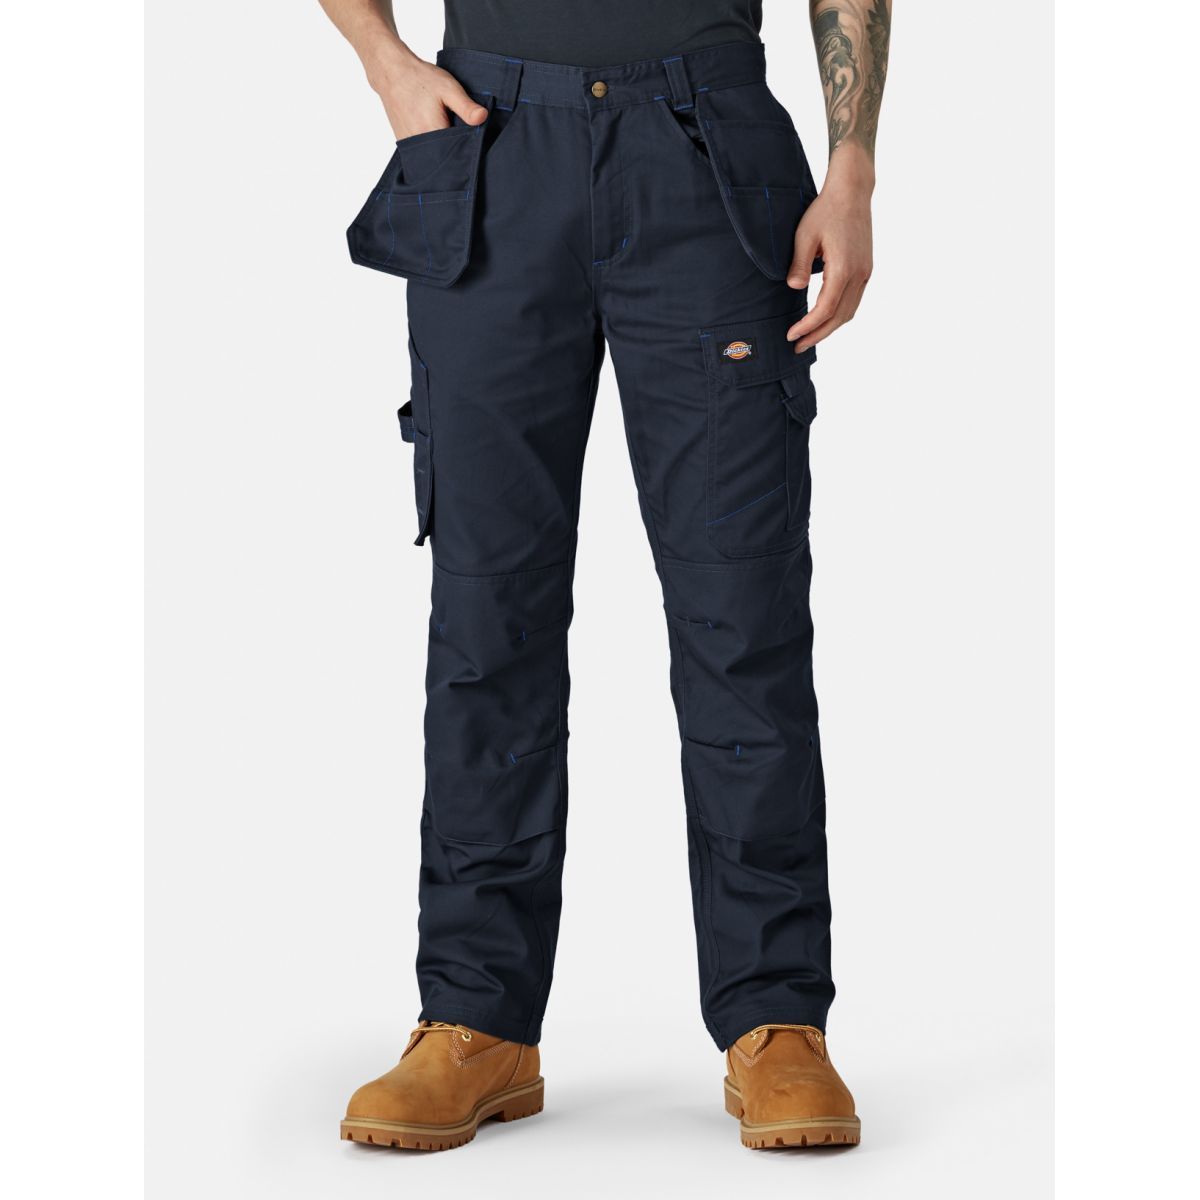 Pantalon Redhawk Pro Bleu marine - Dickies - Taille 44 0